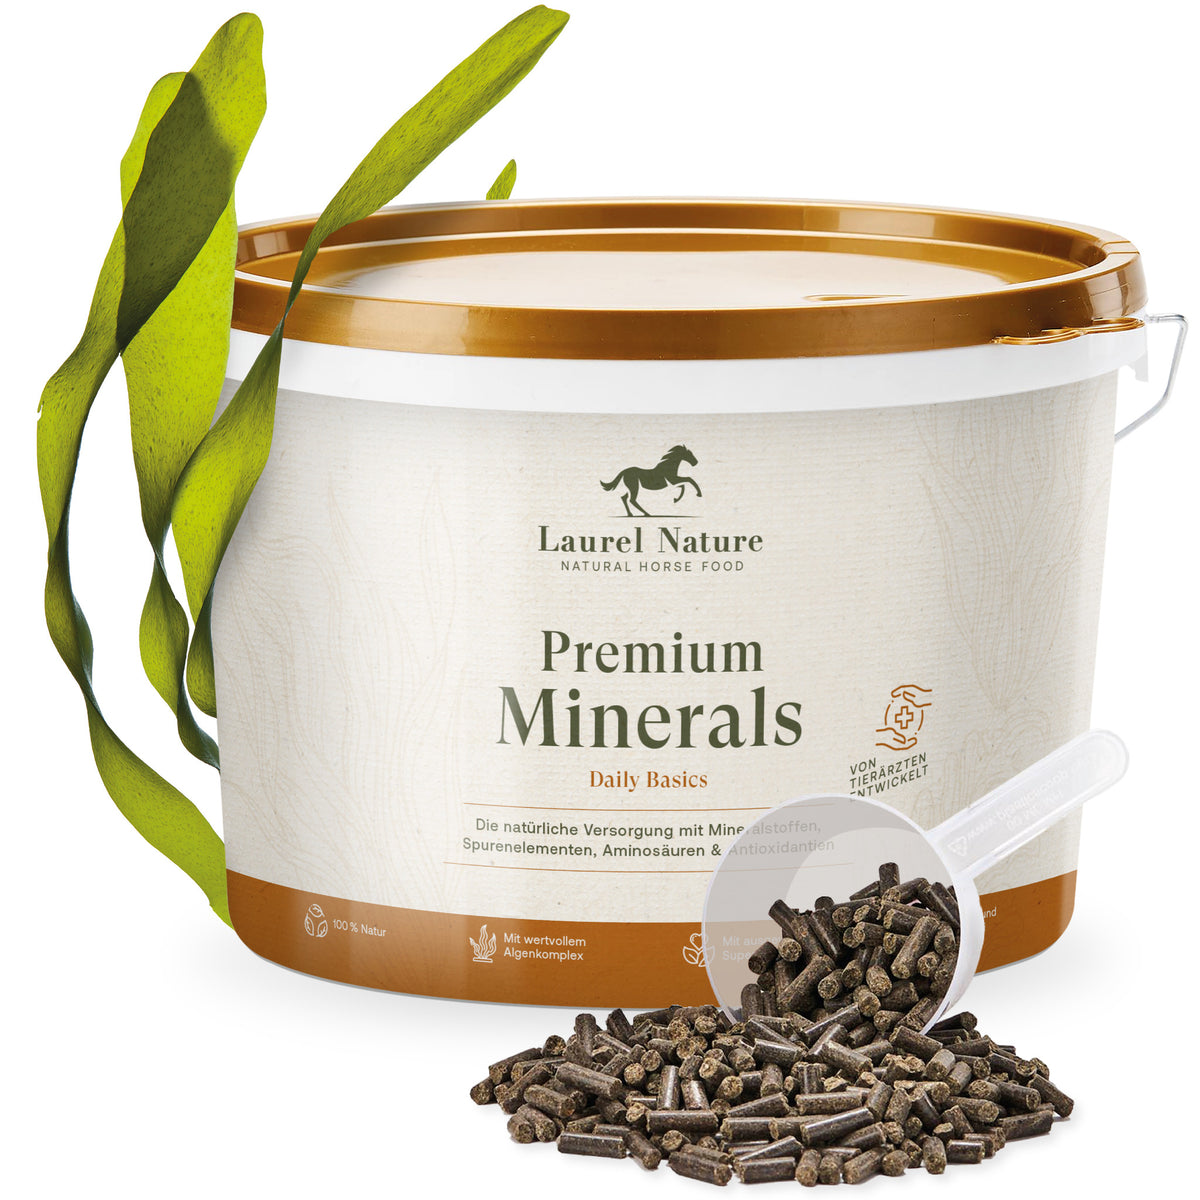 Premium Minerals